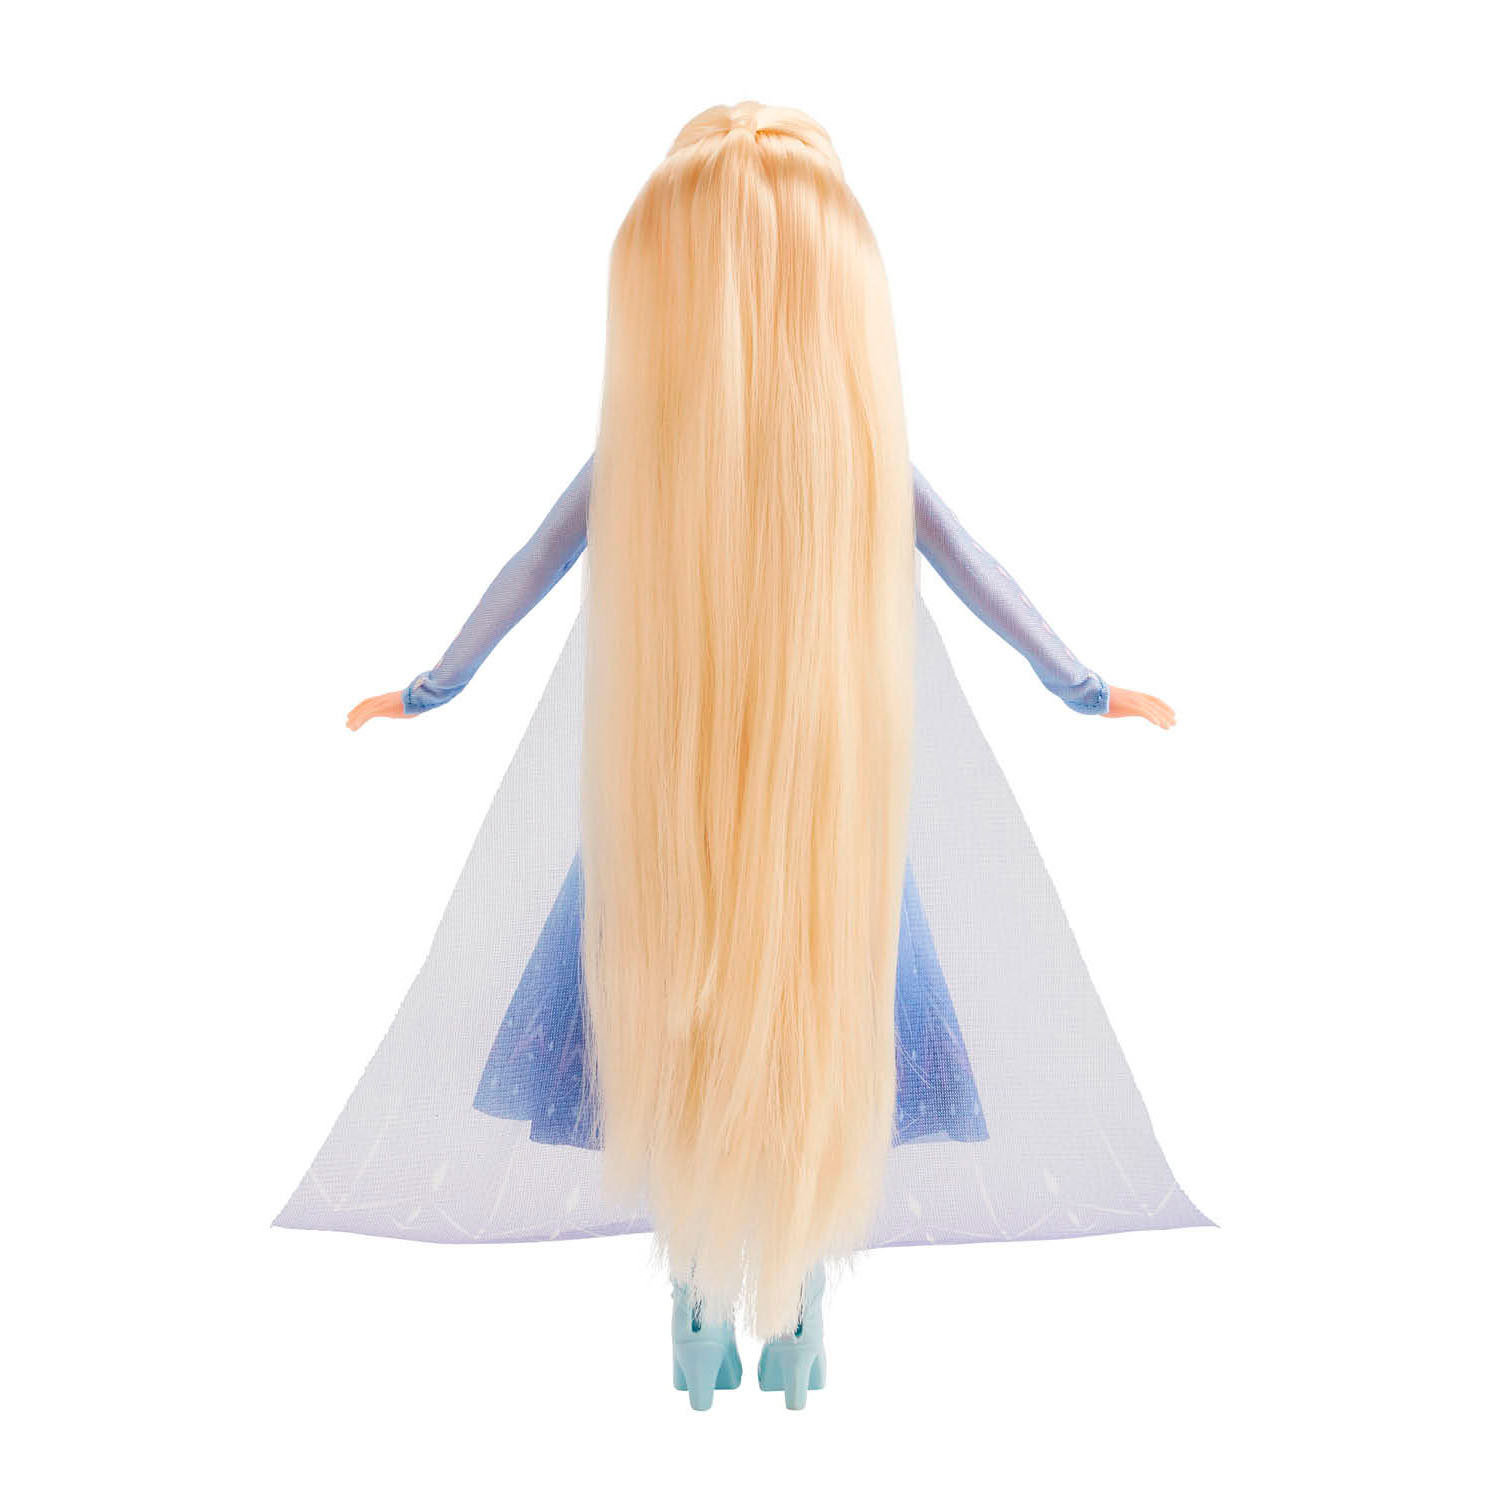 Frozen 2 Pop met Haarstyleset - Elsa